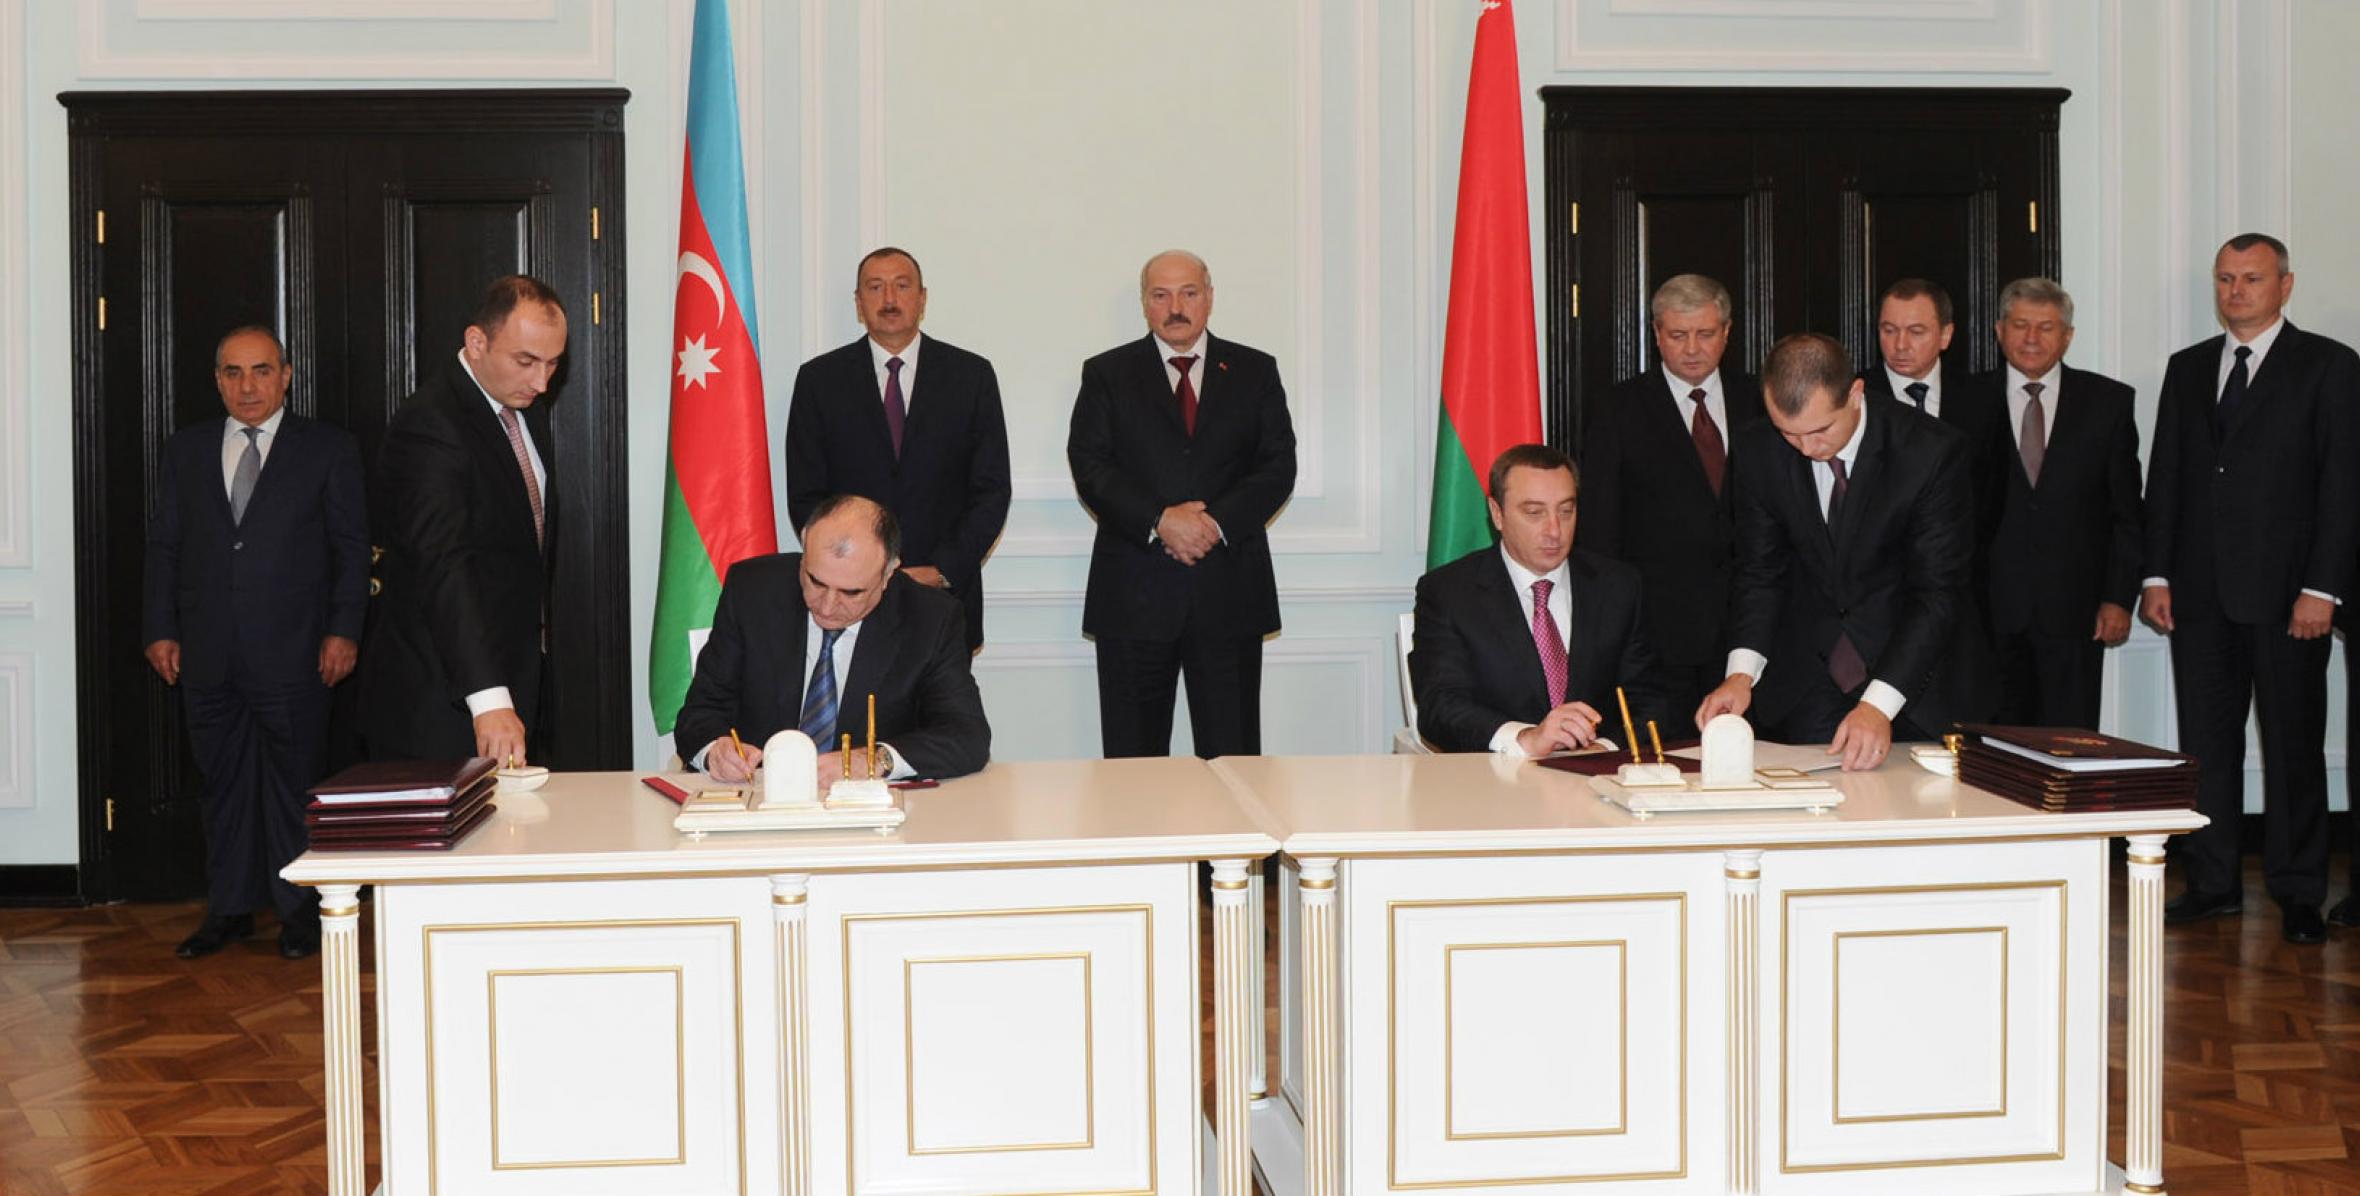 Azərbaycan-Belarus sənədlərinin imzalanması mərasimi olmuşdur